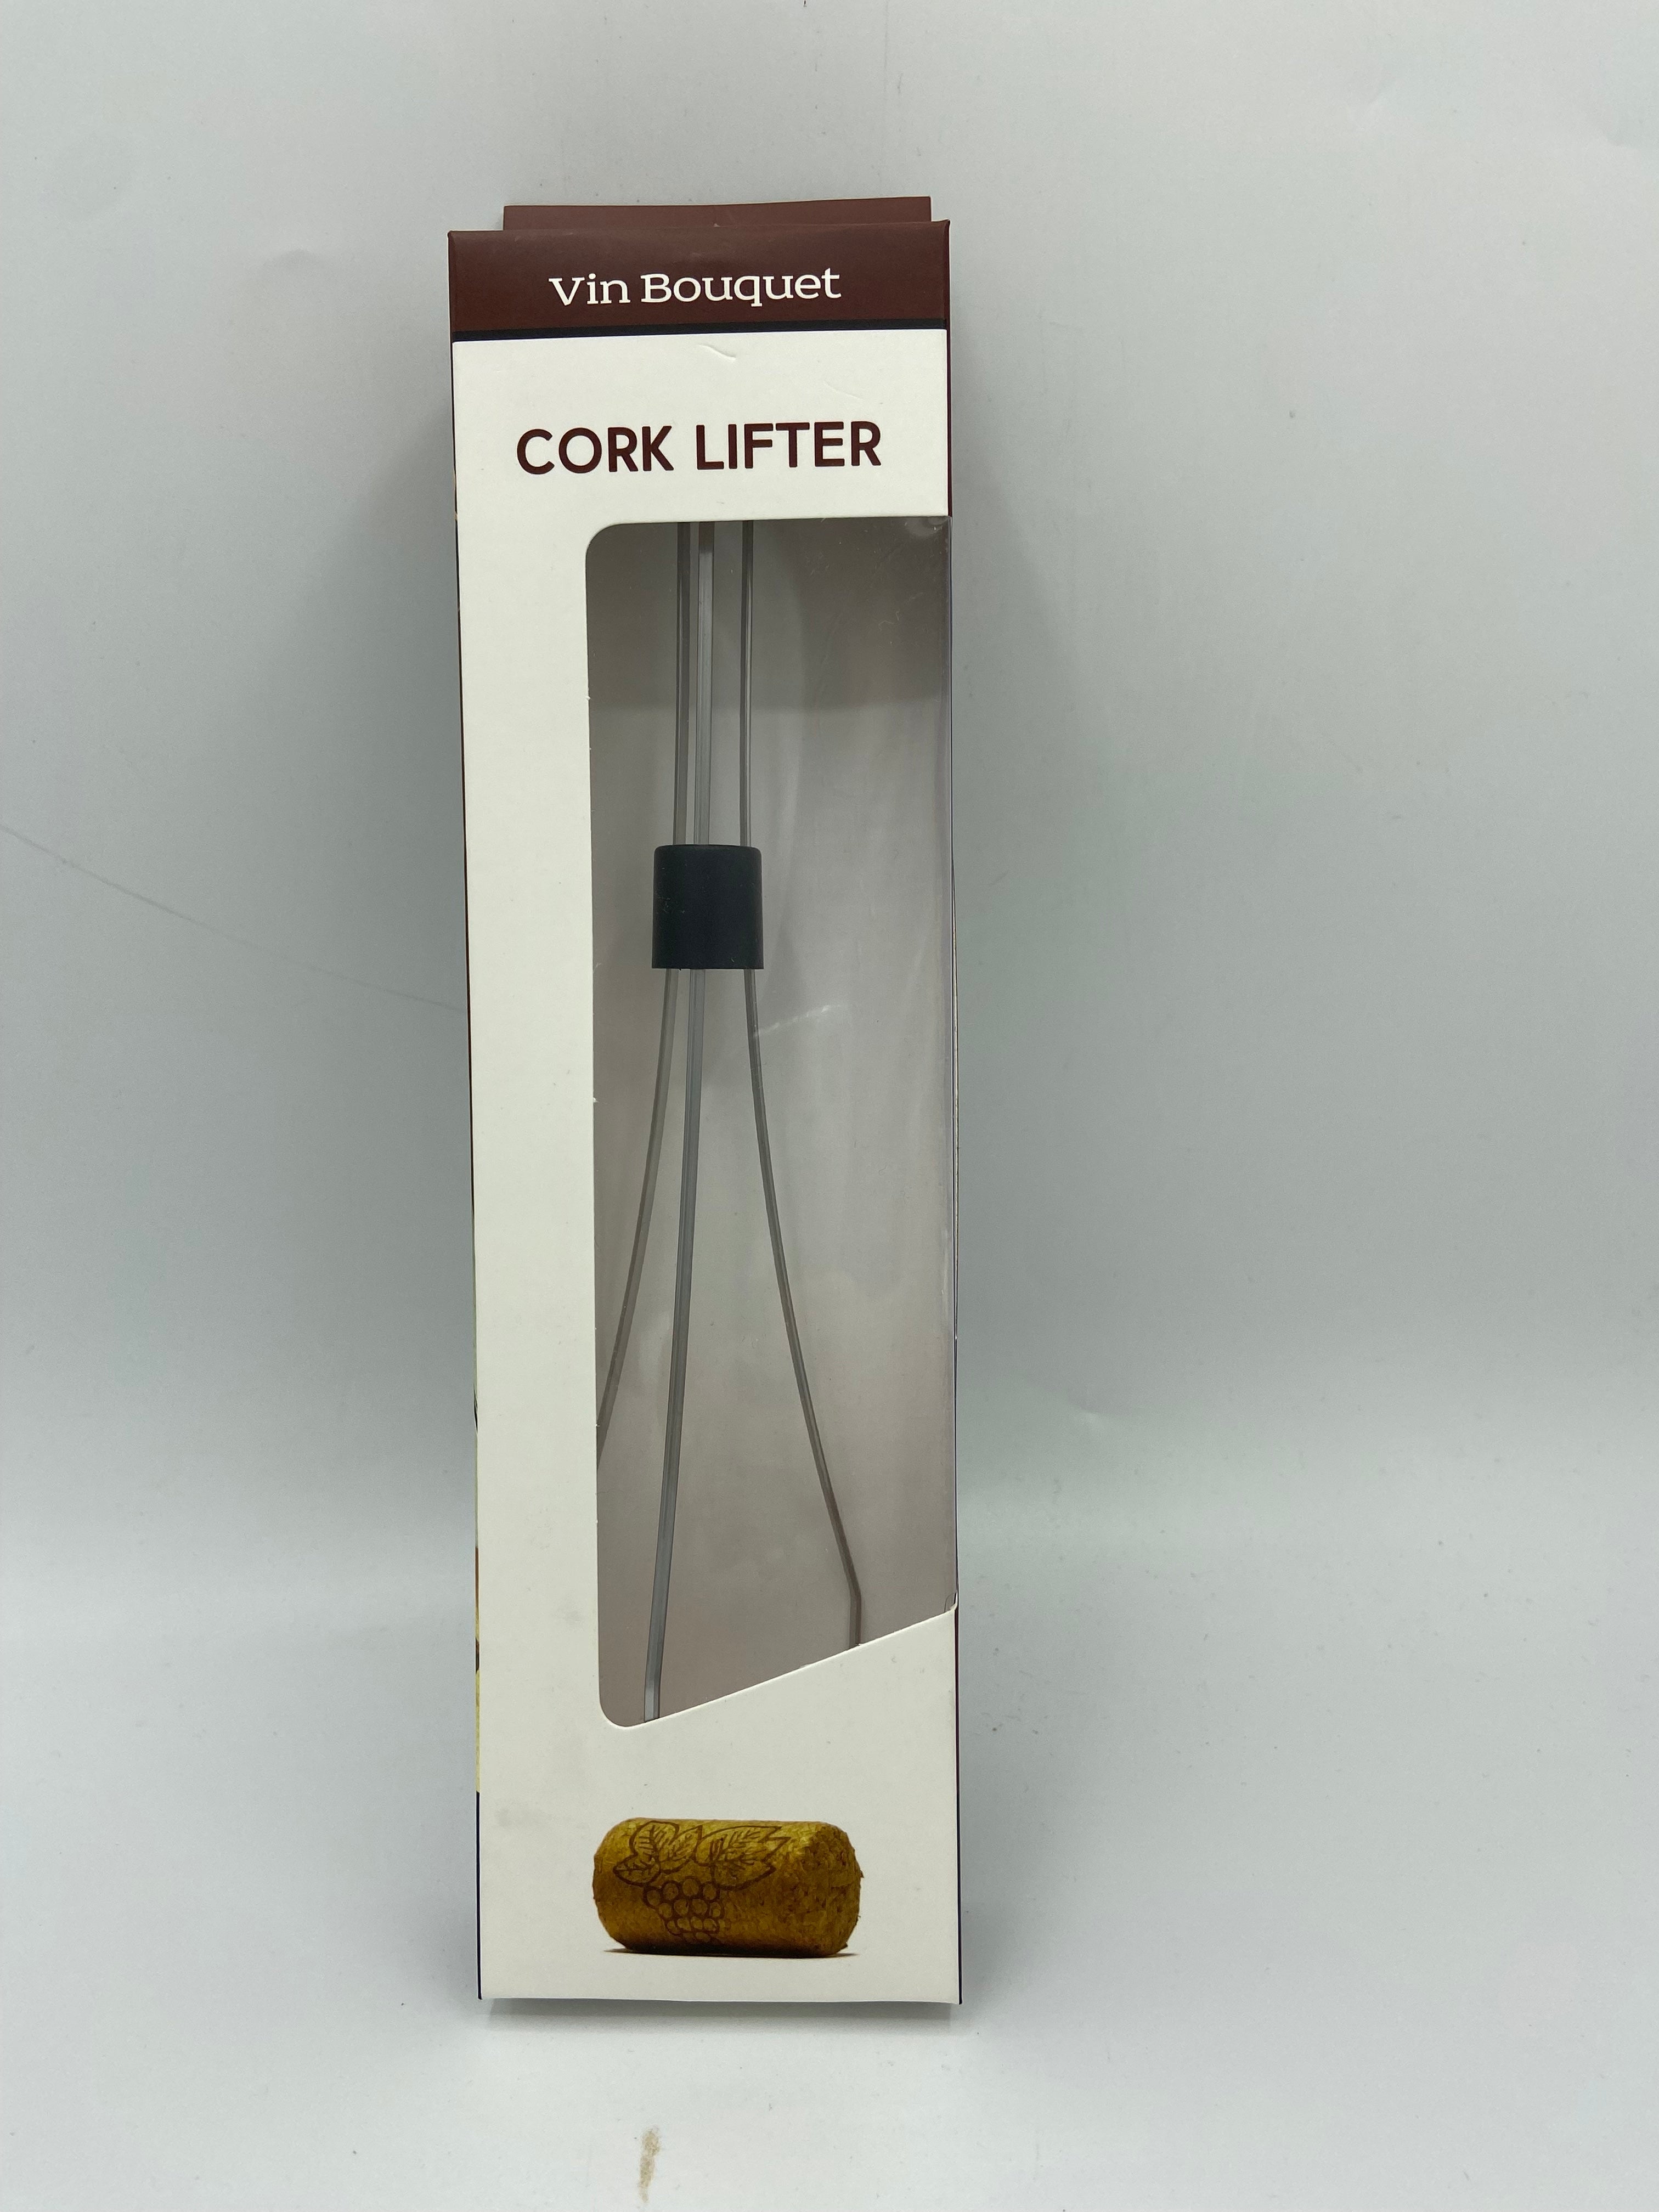 Cork Lifter - Vin Bouquet